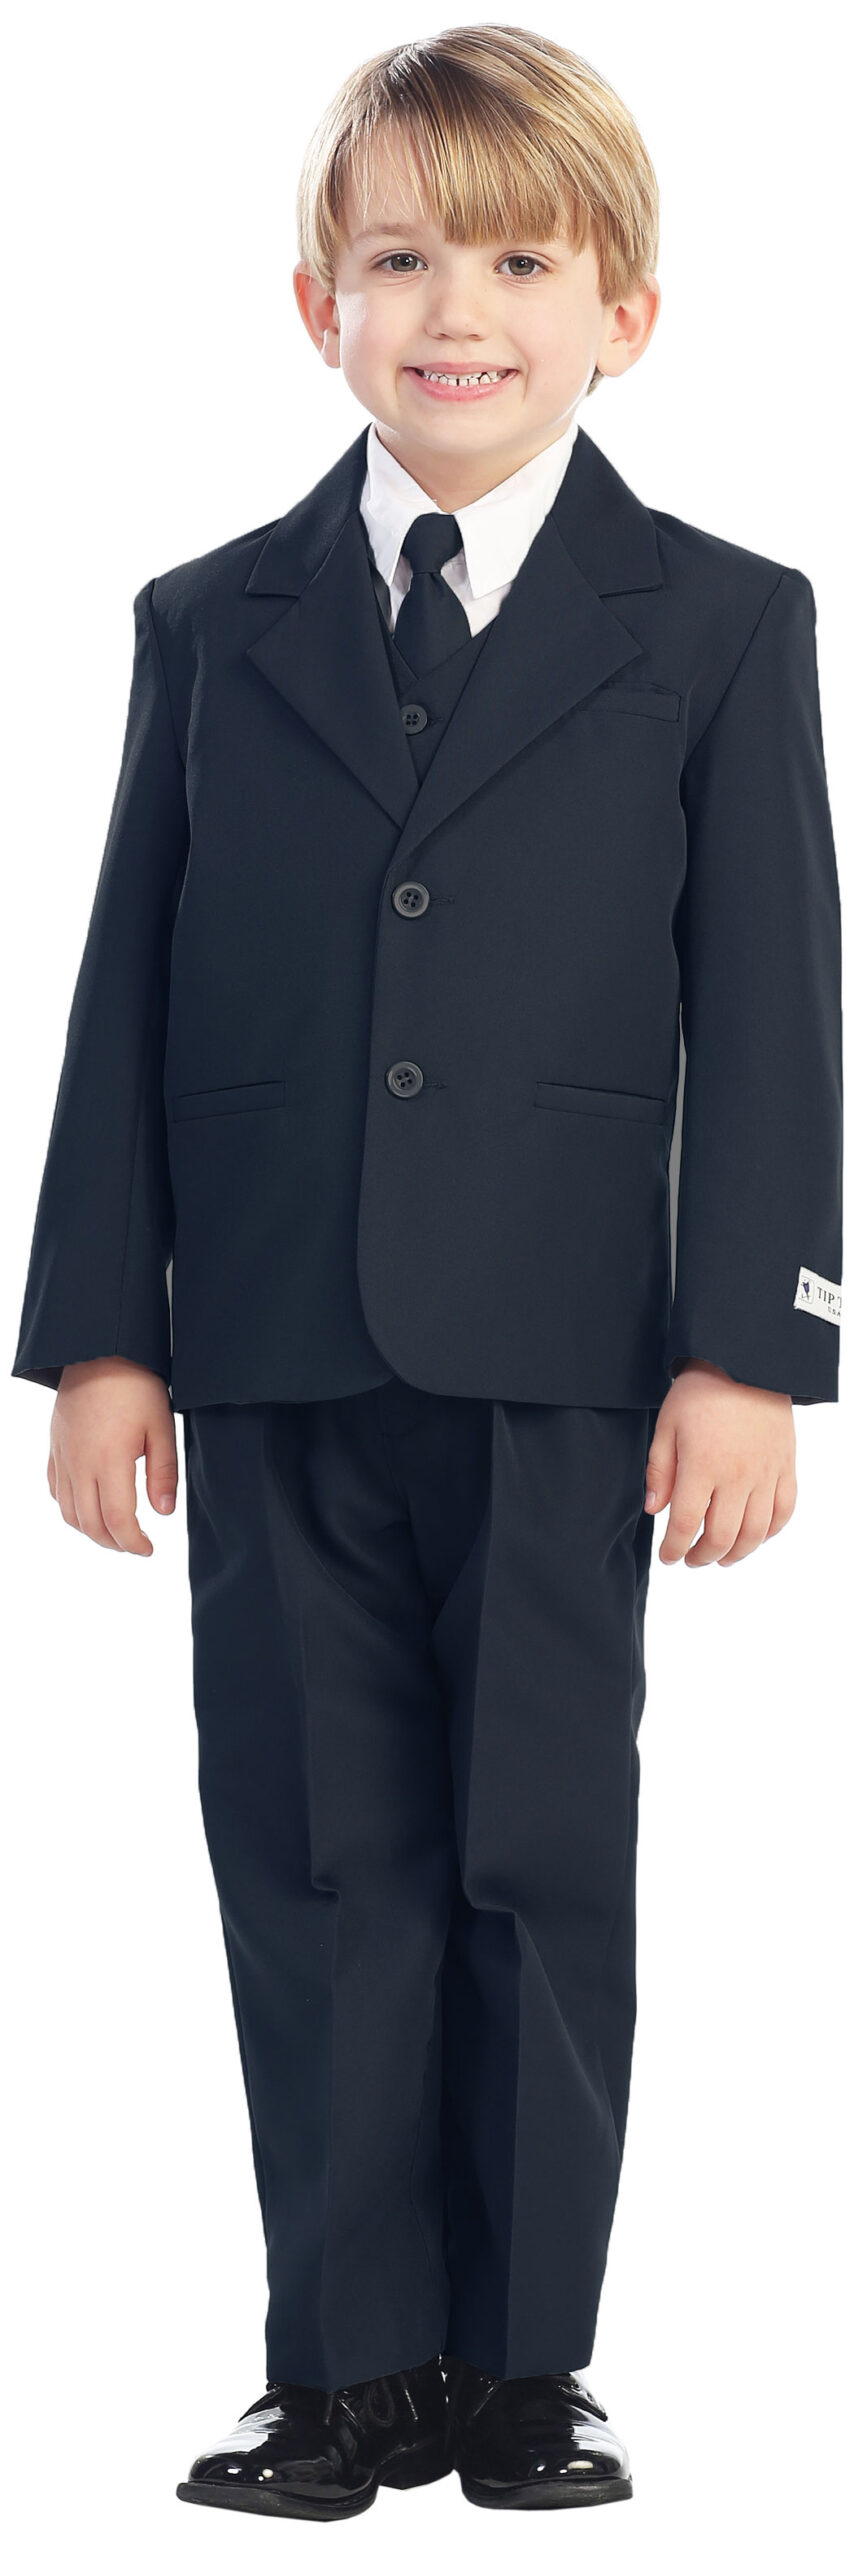 Avery Hill 5-Piece Boy's 2-Button Dress Suit Full-Back Vest - Navy Blue Size 16